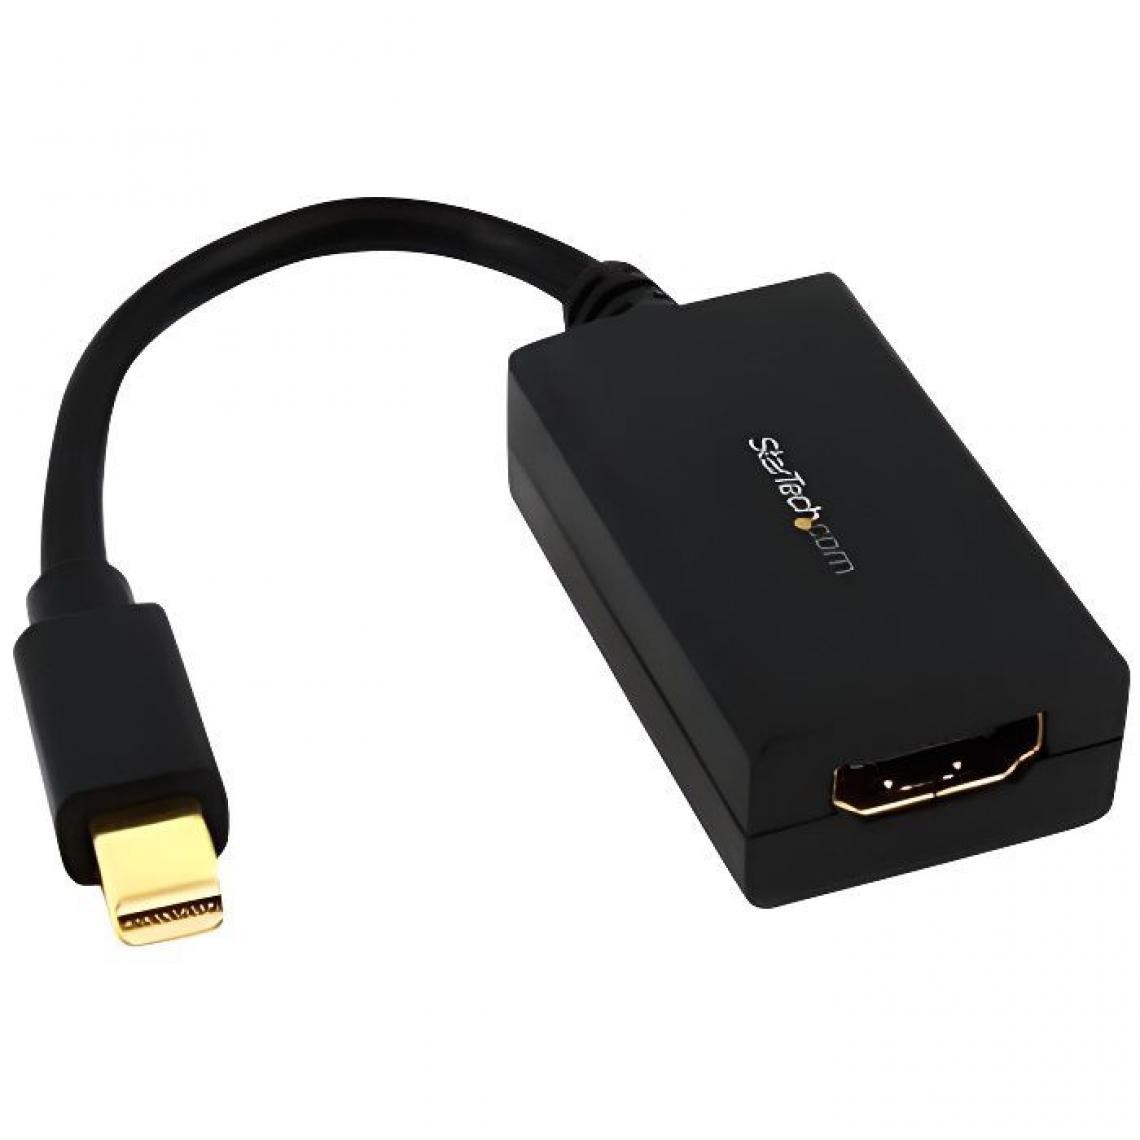 Startech - Adaptateur / convertisseur Mini DisplayPort a HDMI - Convertisseur Mini DP vers HDMI - M/F - 1920 x 1200 / 1080p - MDP2HDMI - Convertisseur Audio et Vidéo